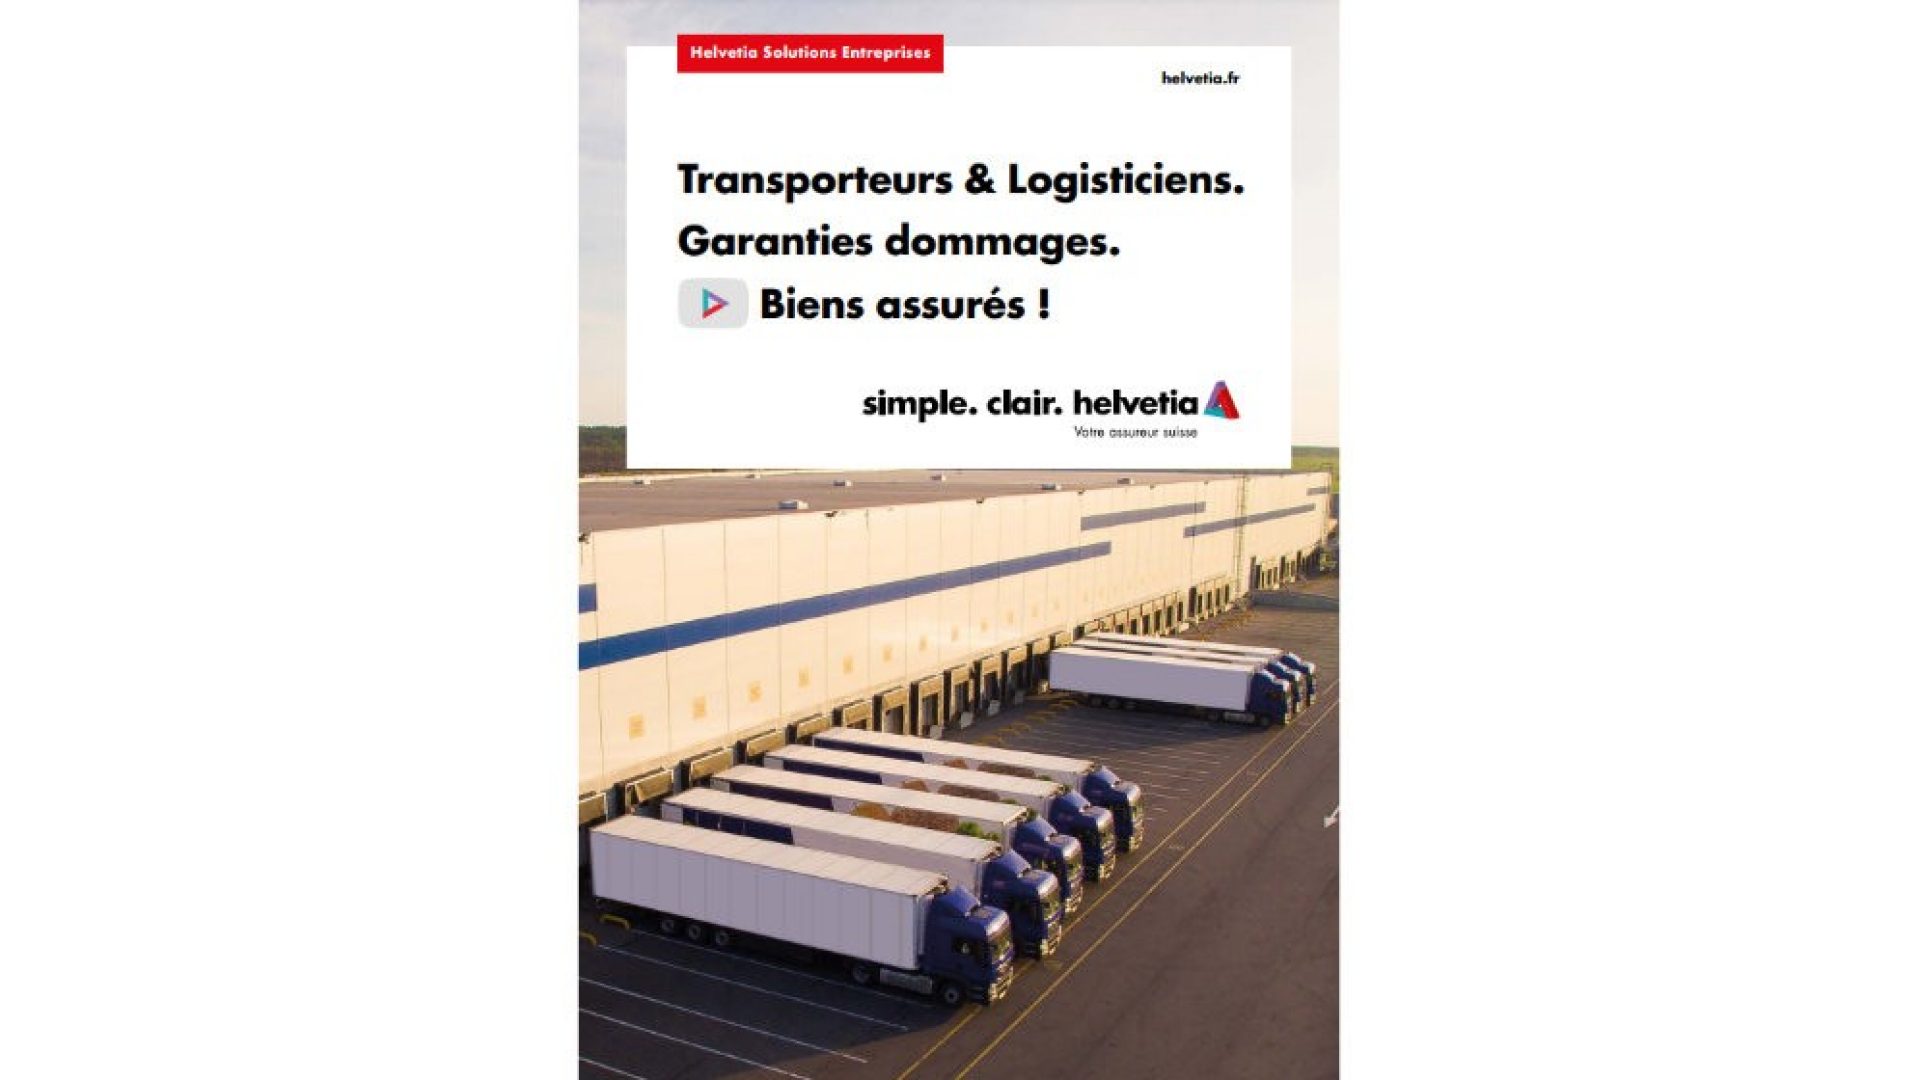 Helvetia-Transporteurs-Logisticiens-Garanties-dommages-aux-biens-forfaitaires-01